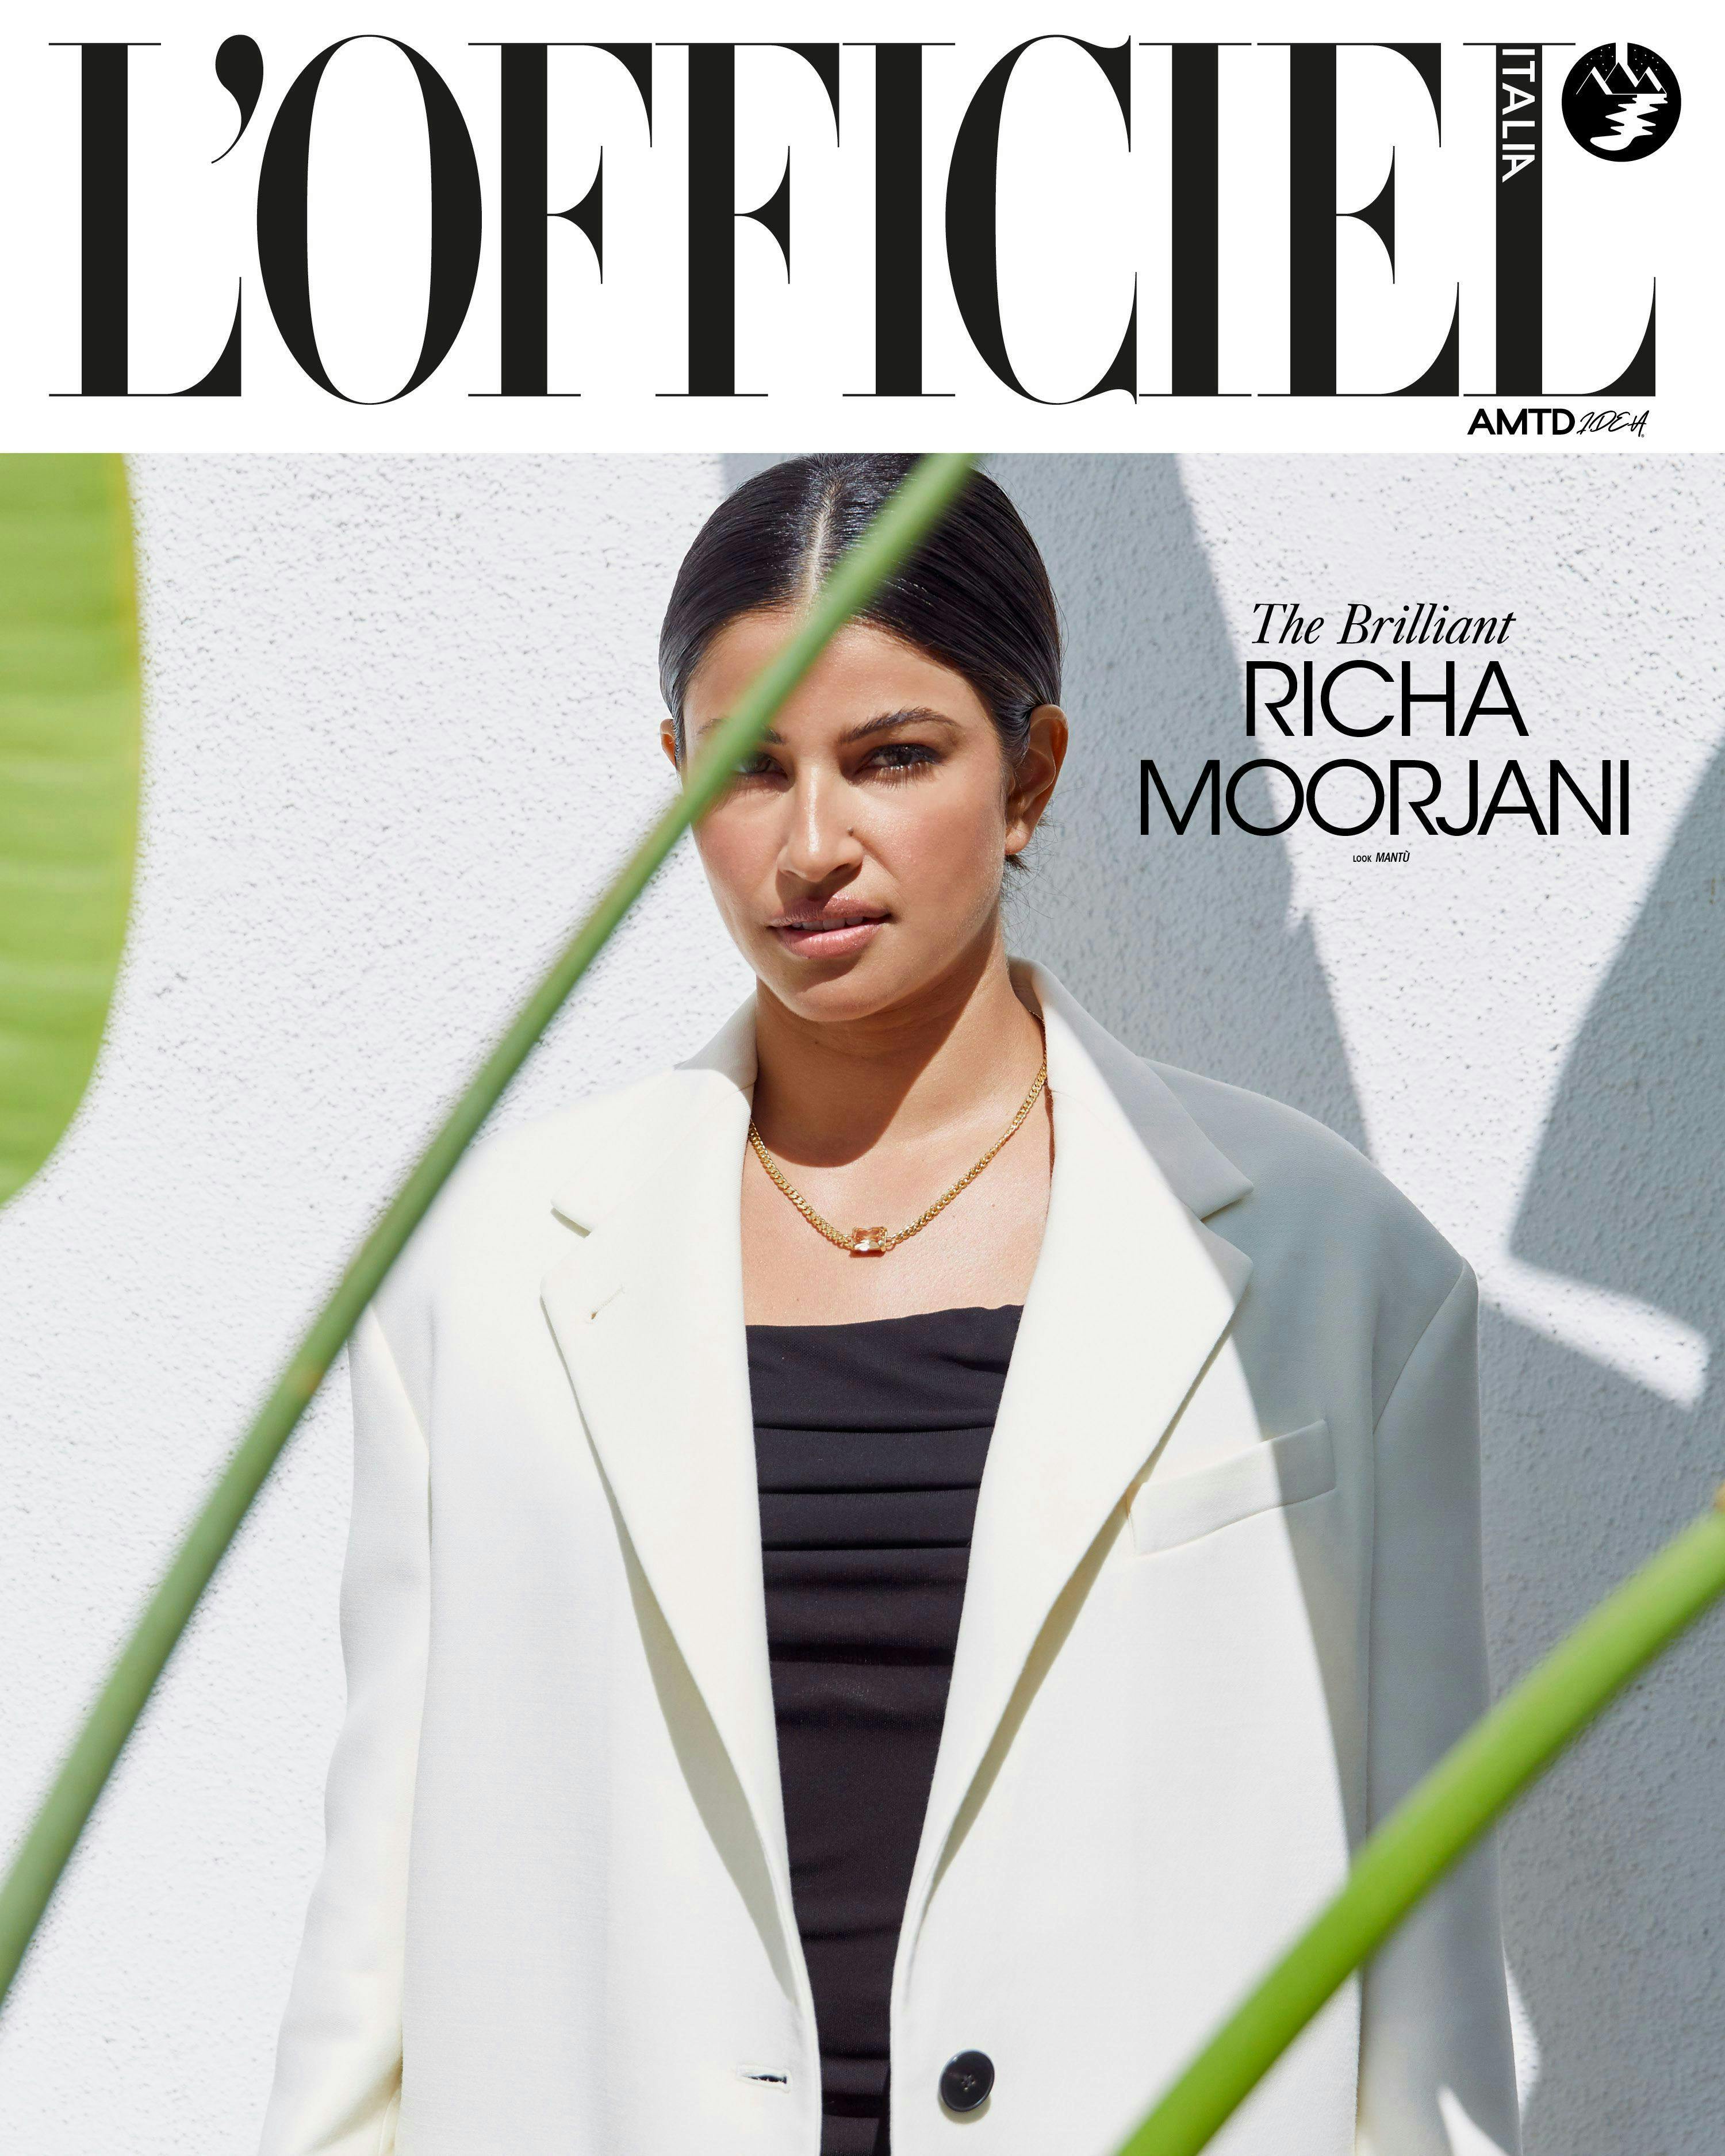 publication coat clothing blazer jacket person woman adult female magazine